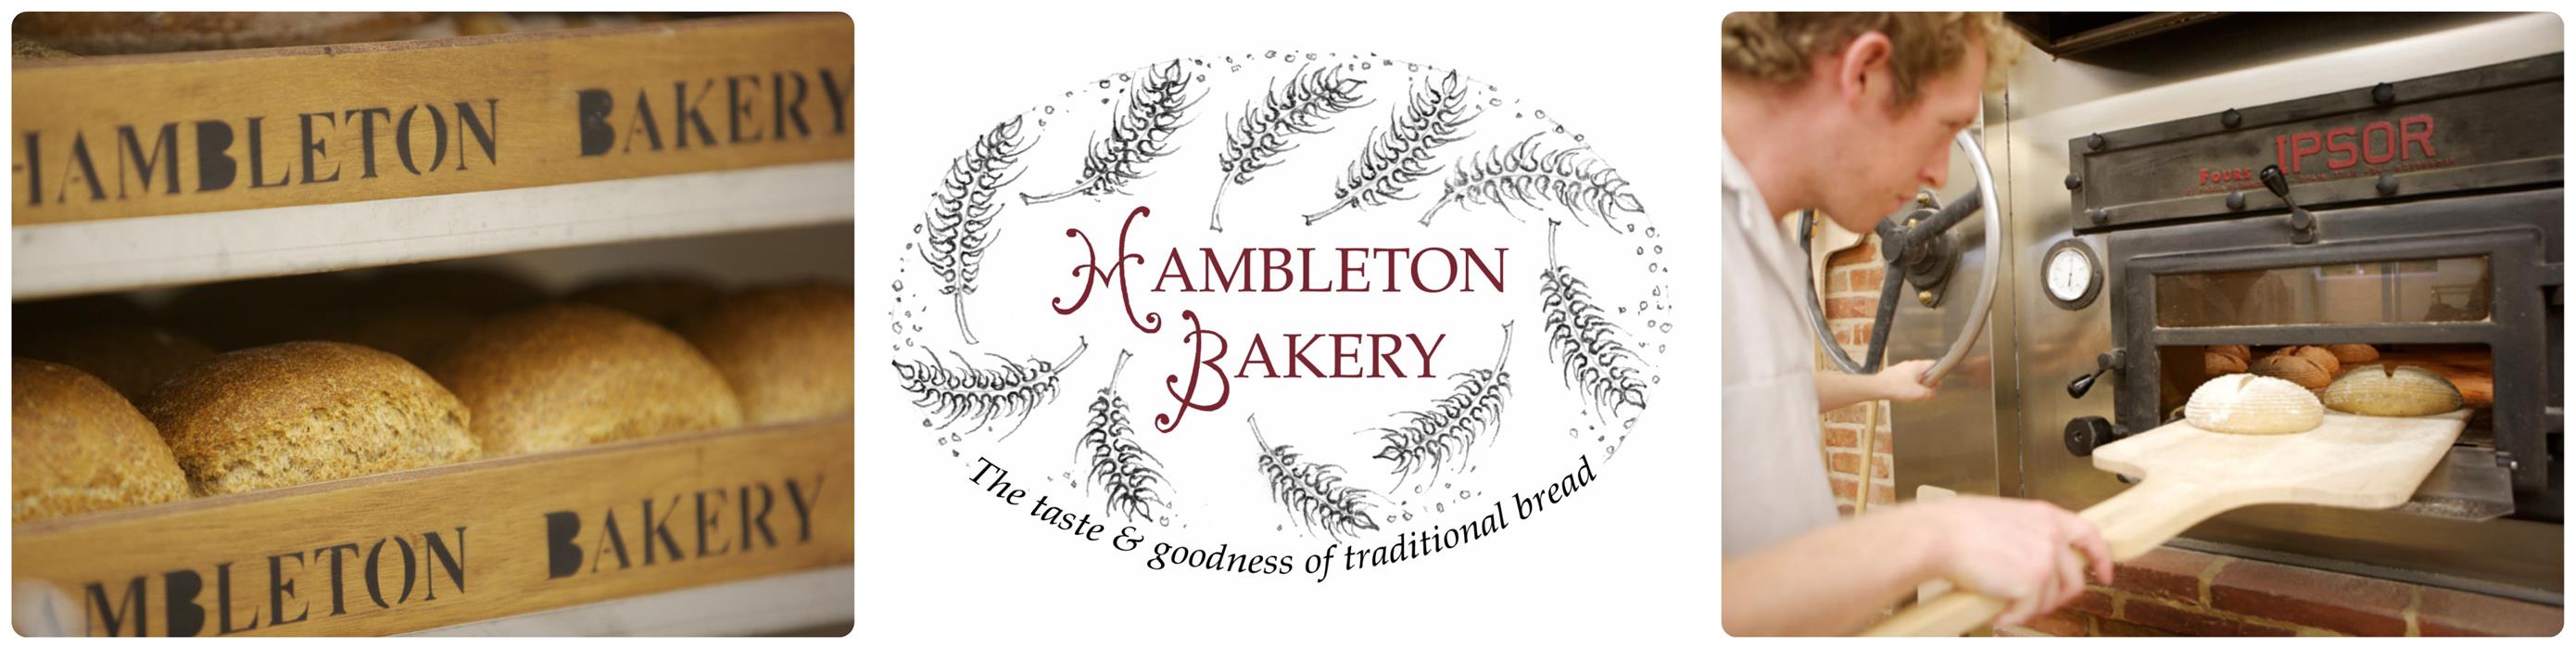 Hambleton Bakery